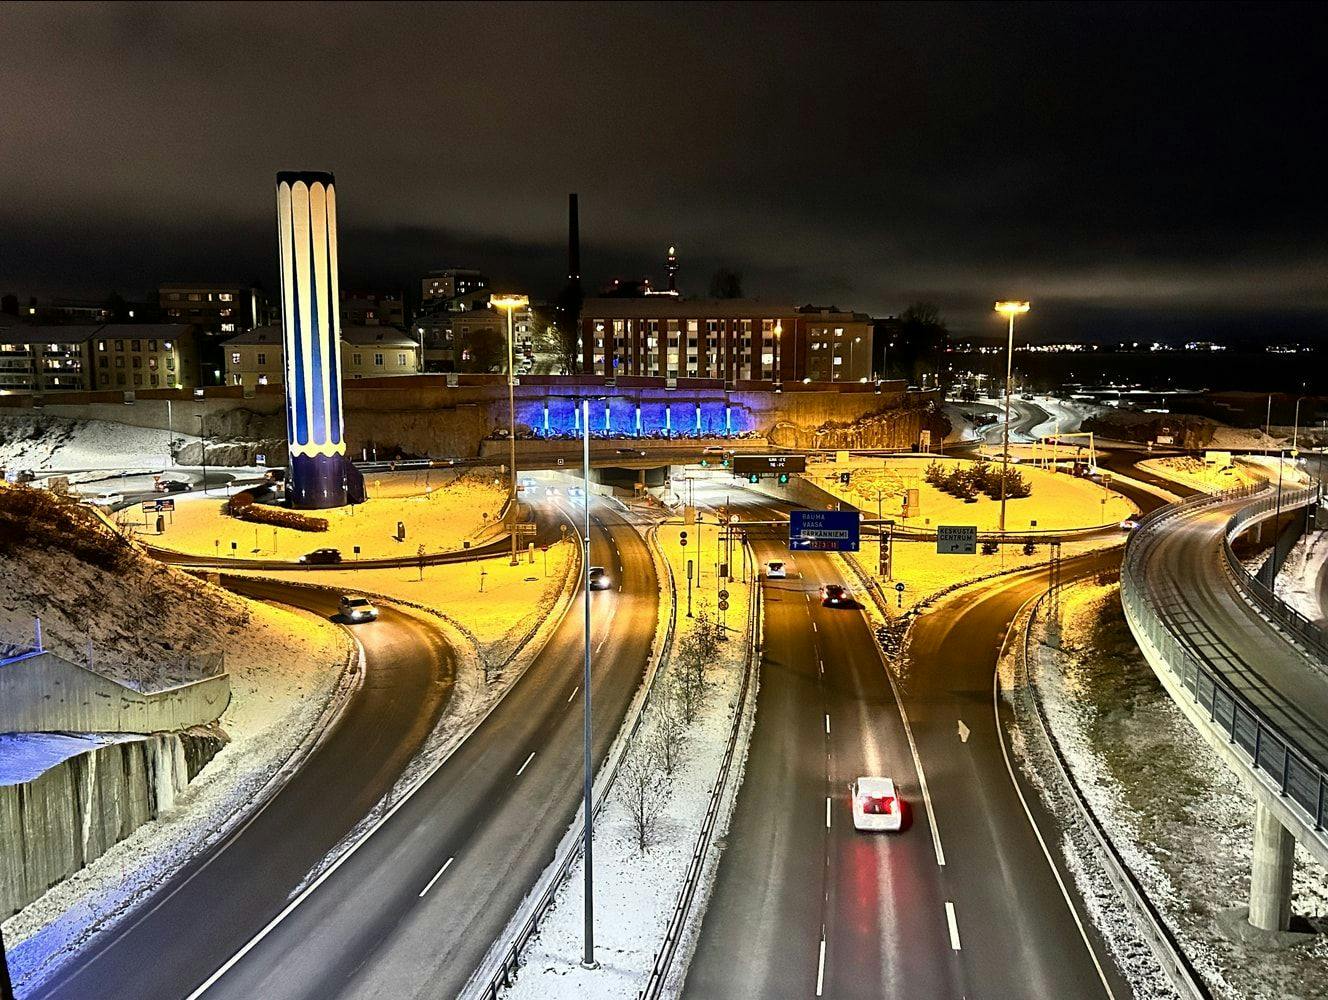 Tampereen keskustan saavutettavuutta henkilöautolla on kehitetty uudella Ratapihankadulla, josta ajetaan Hämpin parkkiin. Tässä Ratapihankatu yhdistyy Rantatunneliin